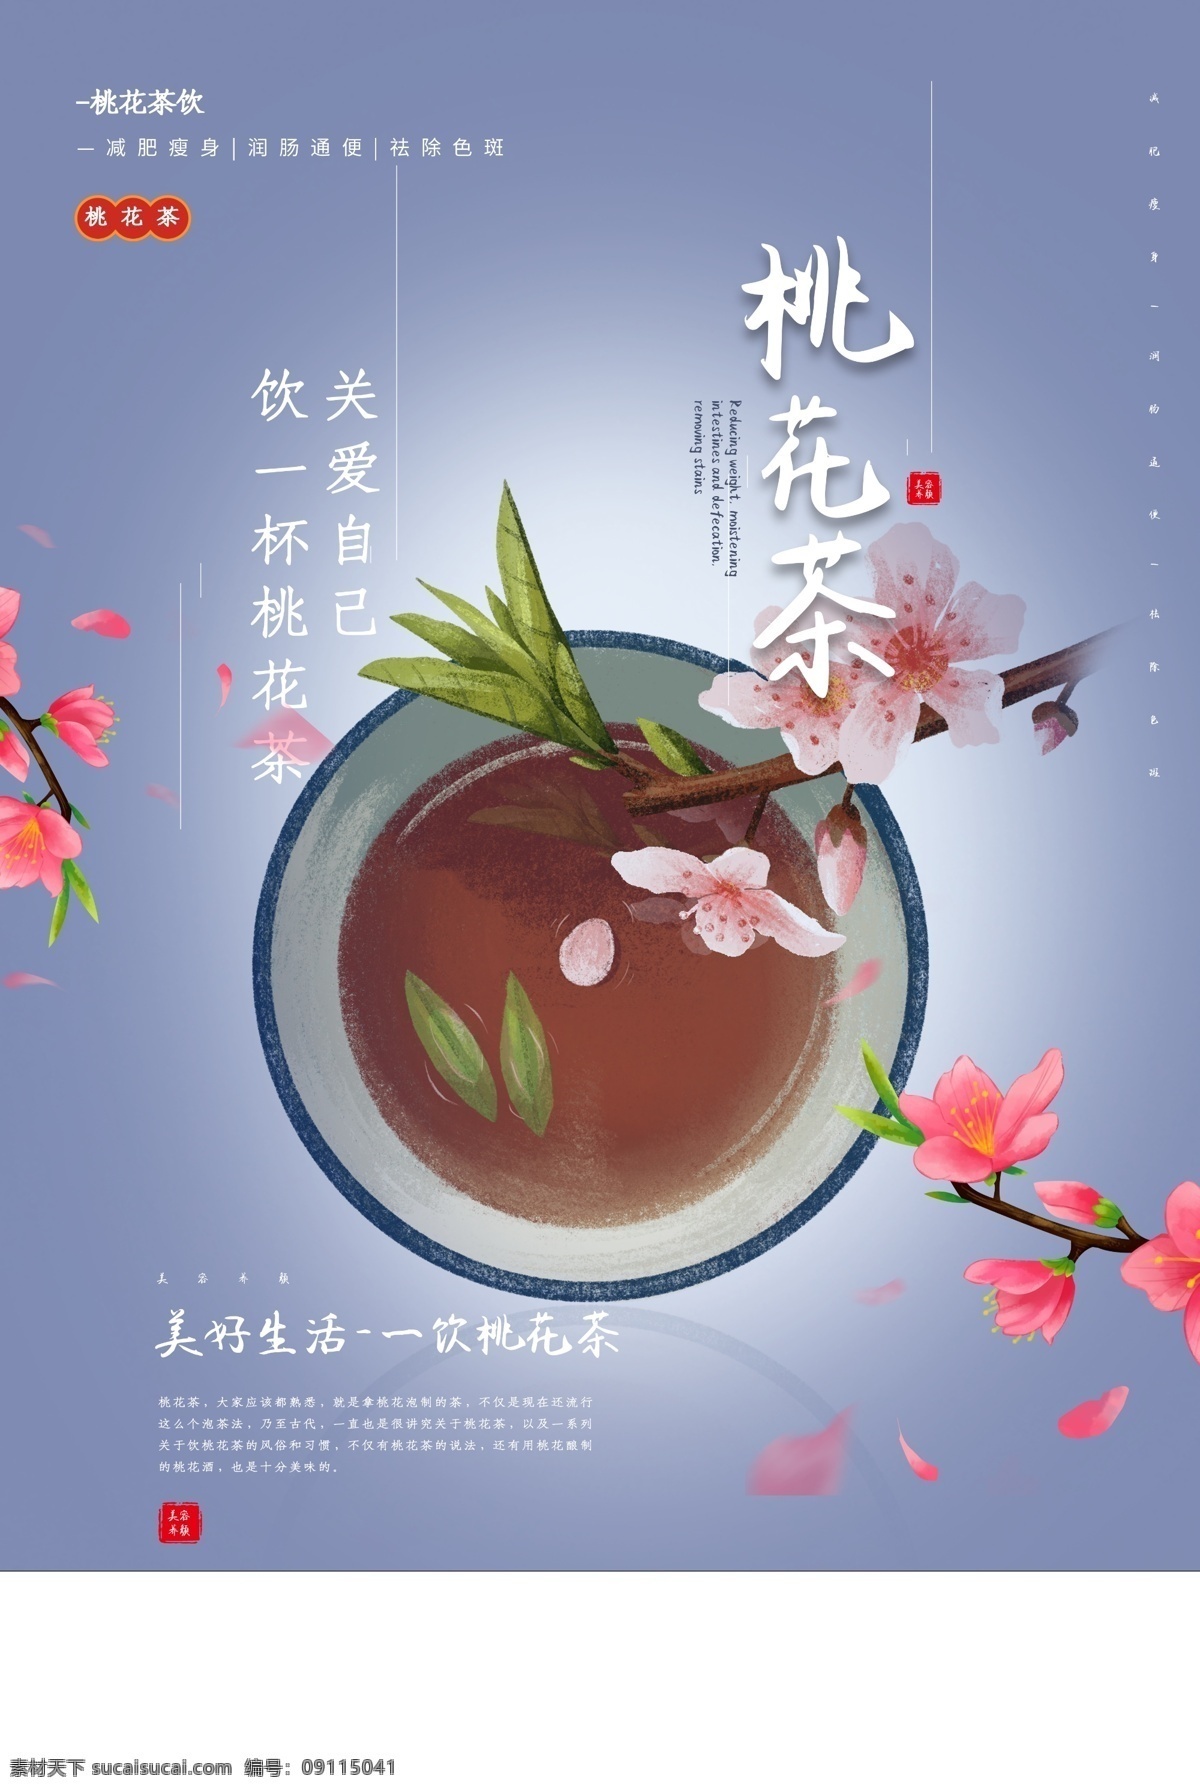 桃花 茶 活动 促销 宣传海报 桃花茶 宣传 海报